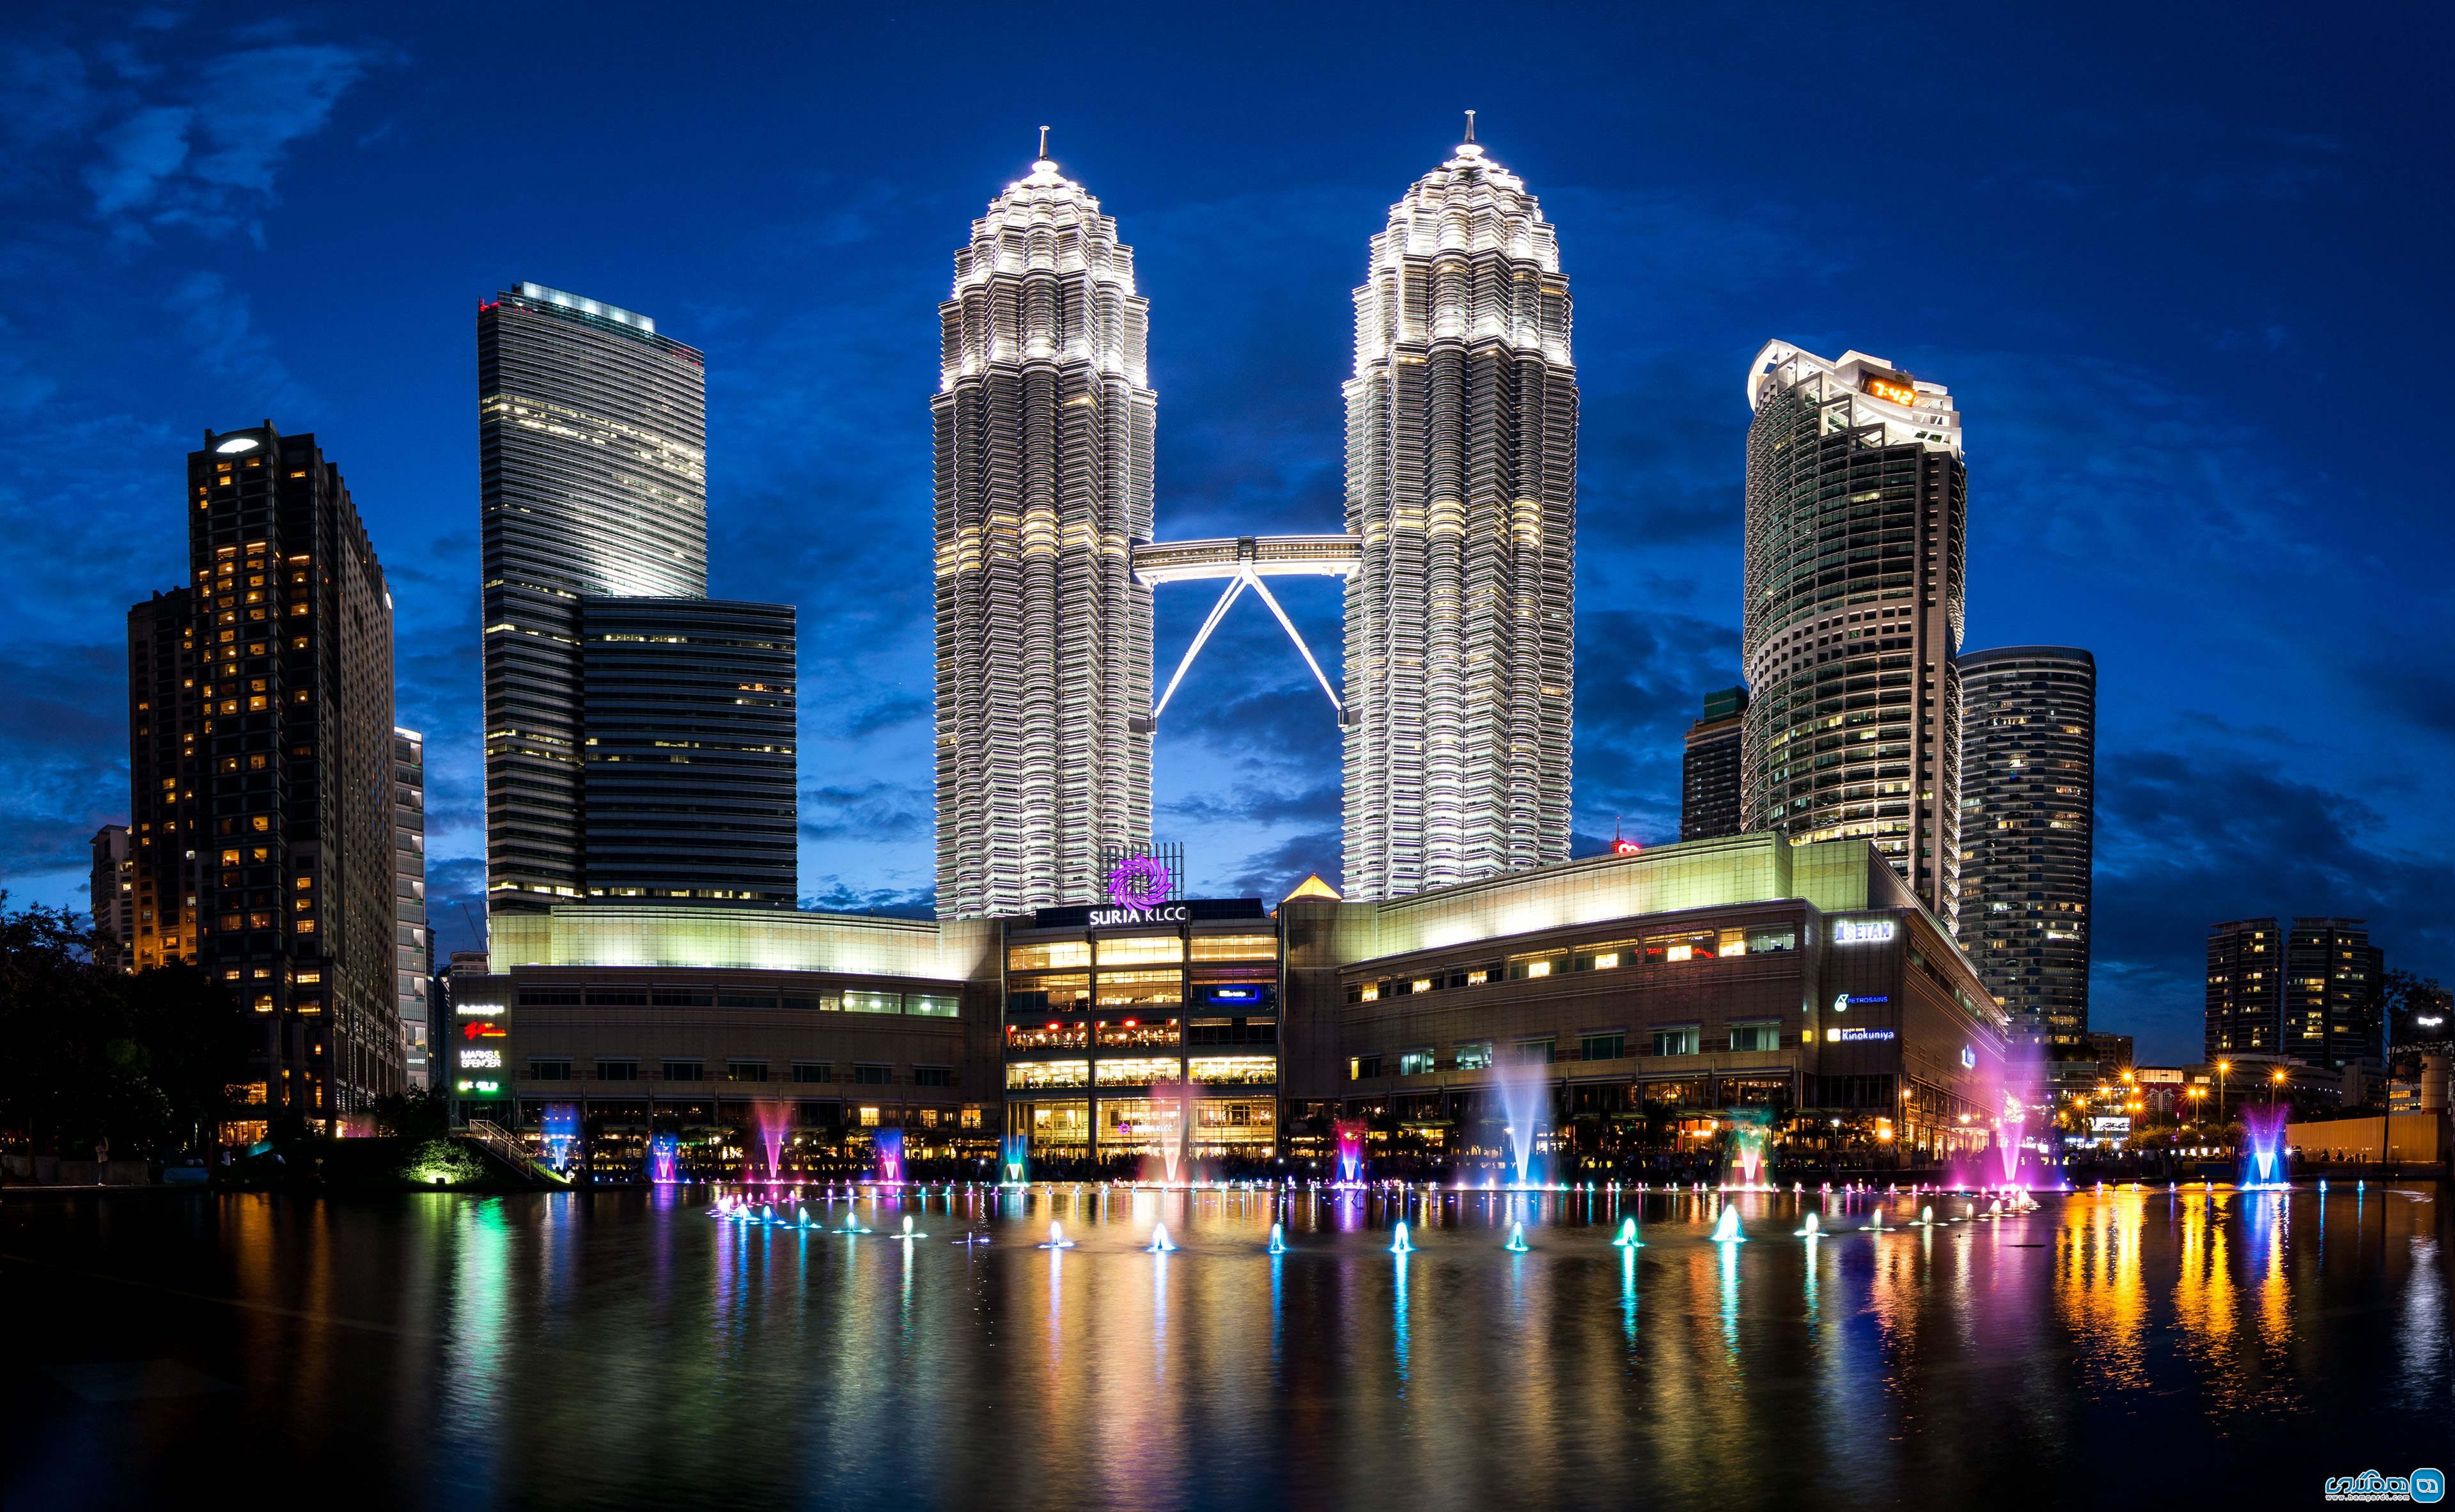 به تماشای برج های پتروناس Petronas Towers بروید